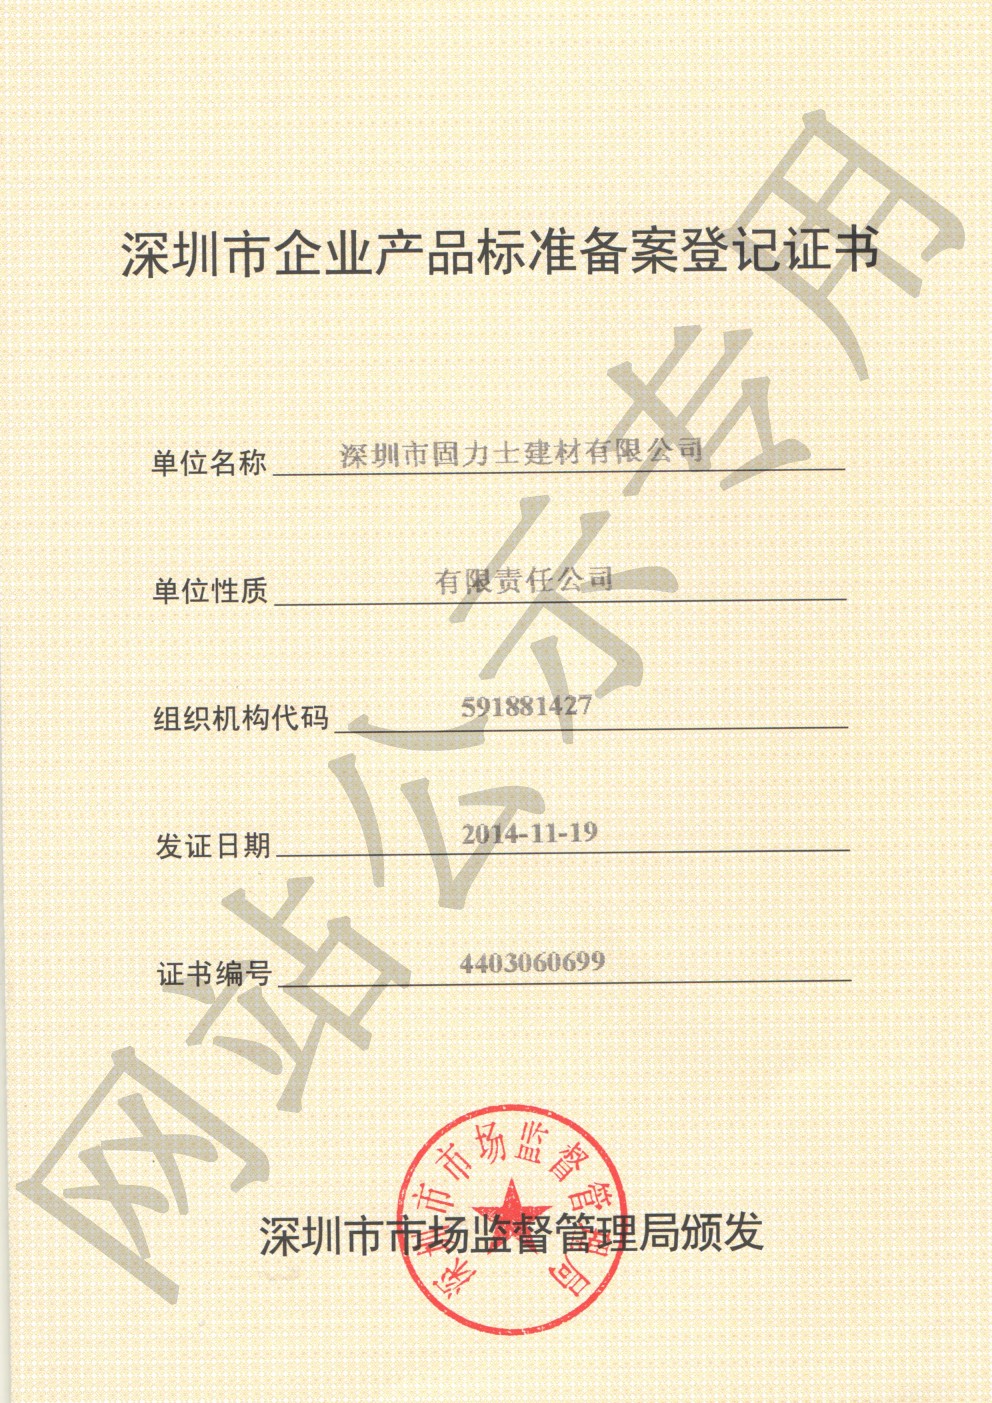 海沧企业产品标准登记证书